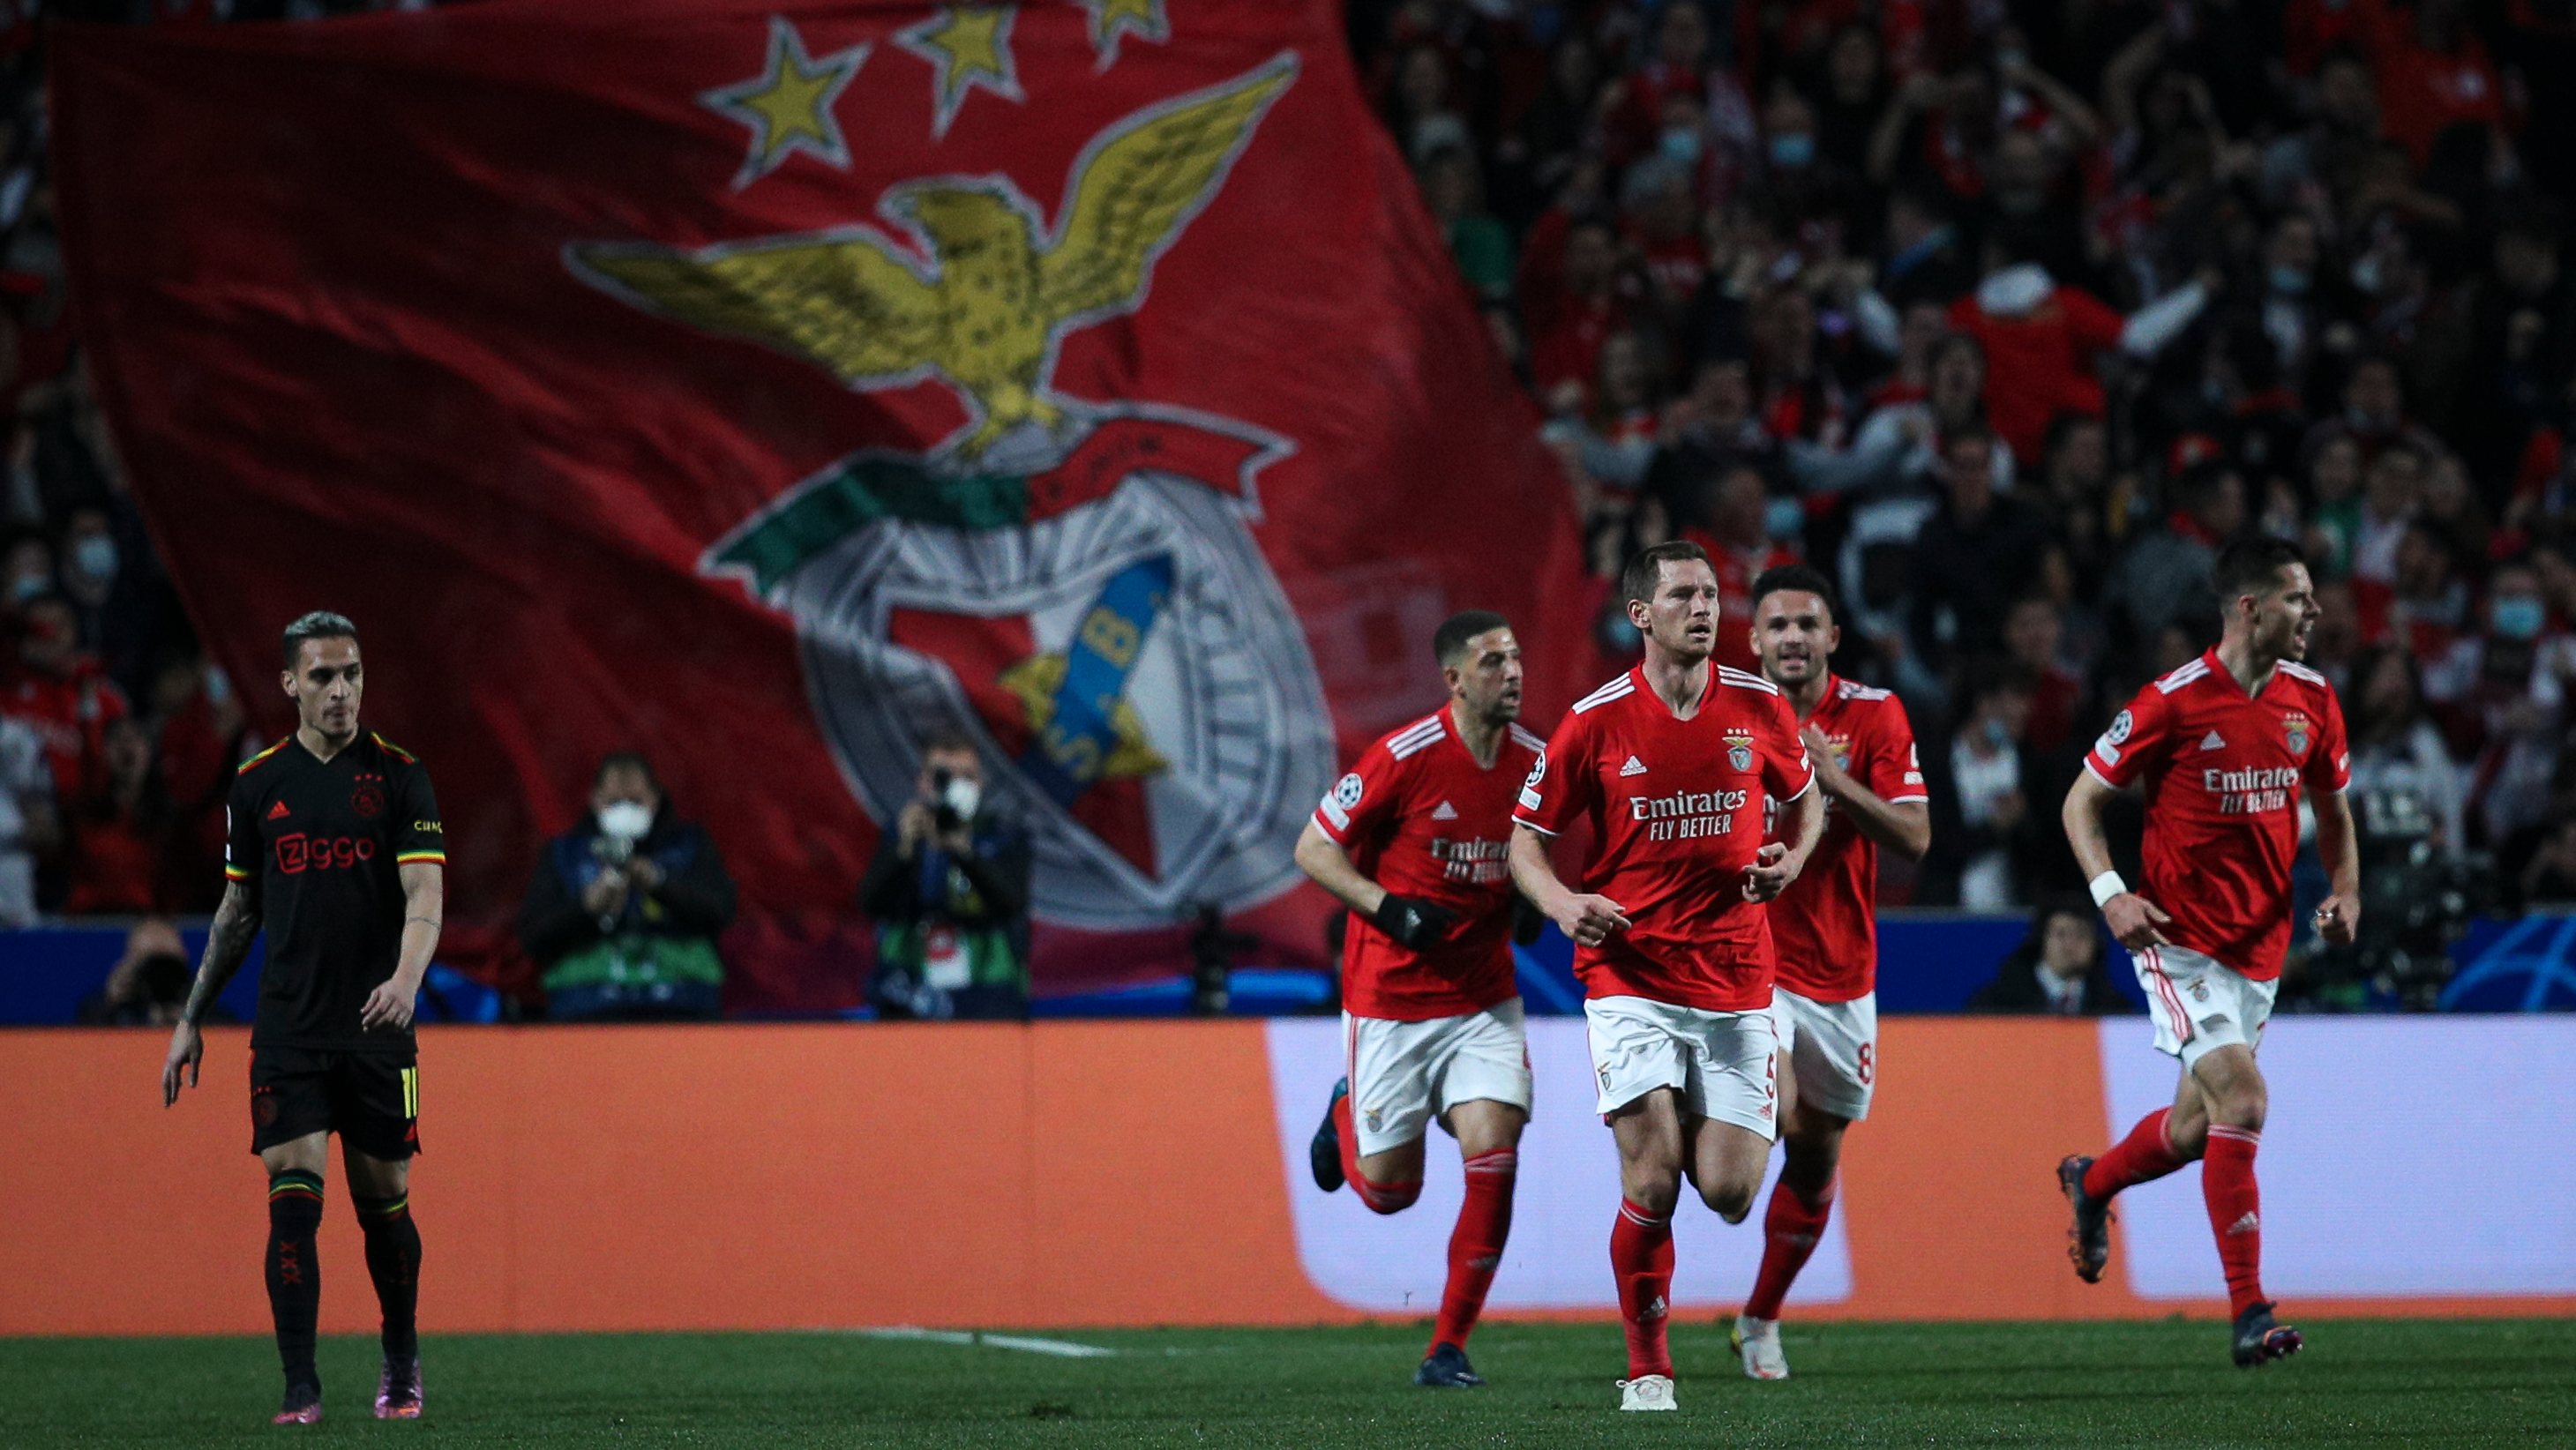 Champions League. FC Porto e Benfica com jogos decisivos em exclusivo na  Eleven